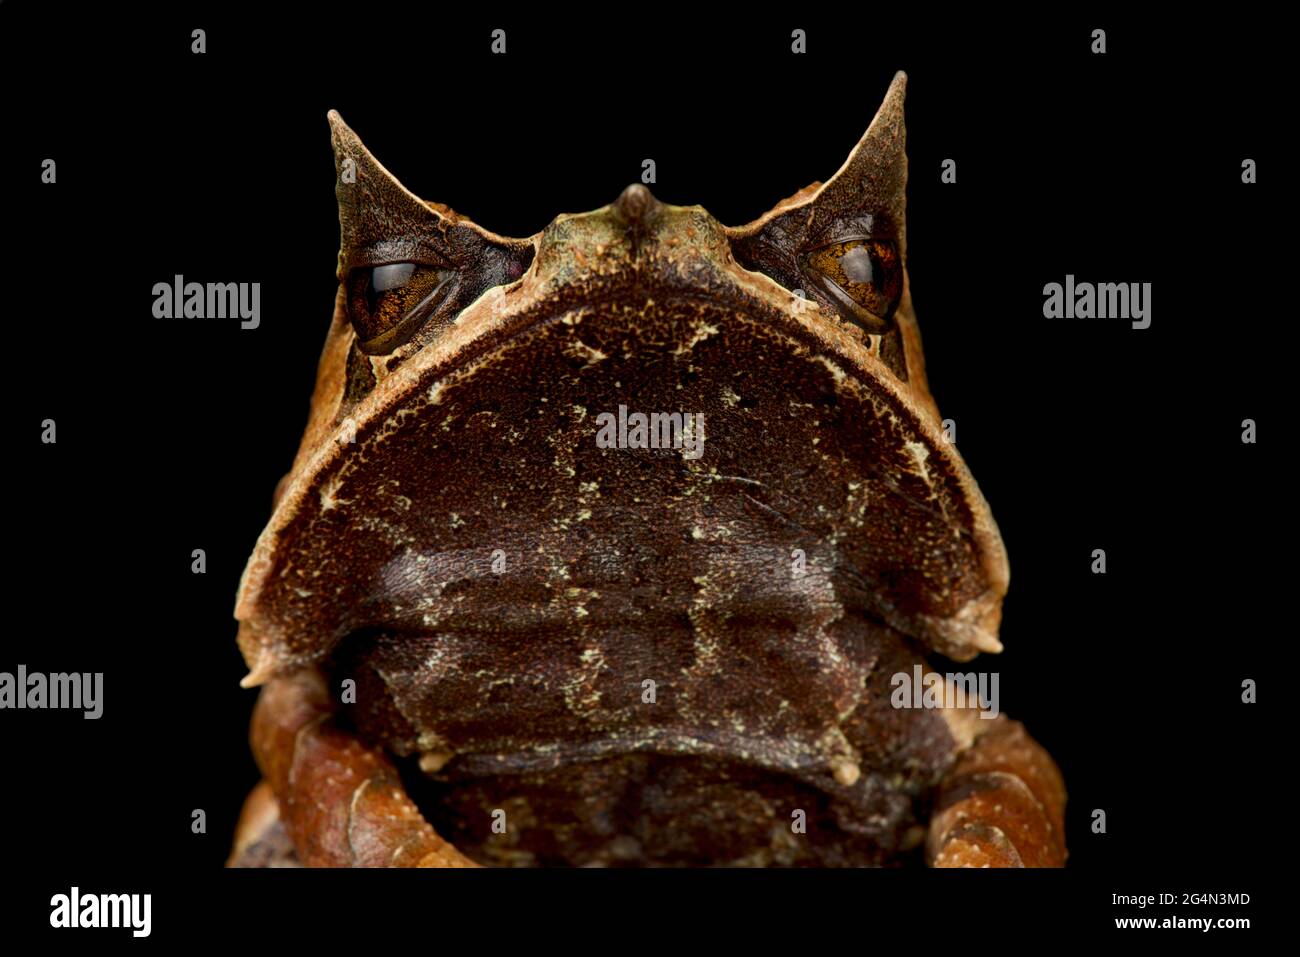 Malayan Horned Frog (Megophrys nasuta) Stock Photo